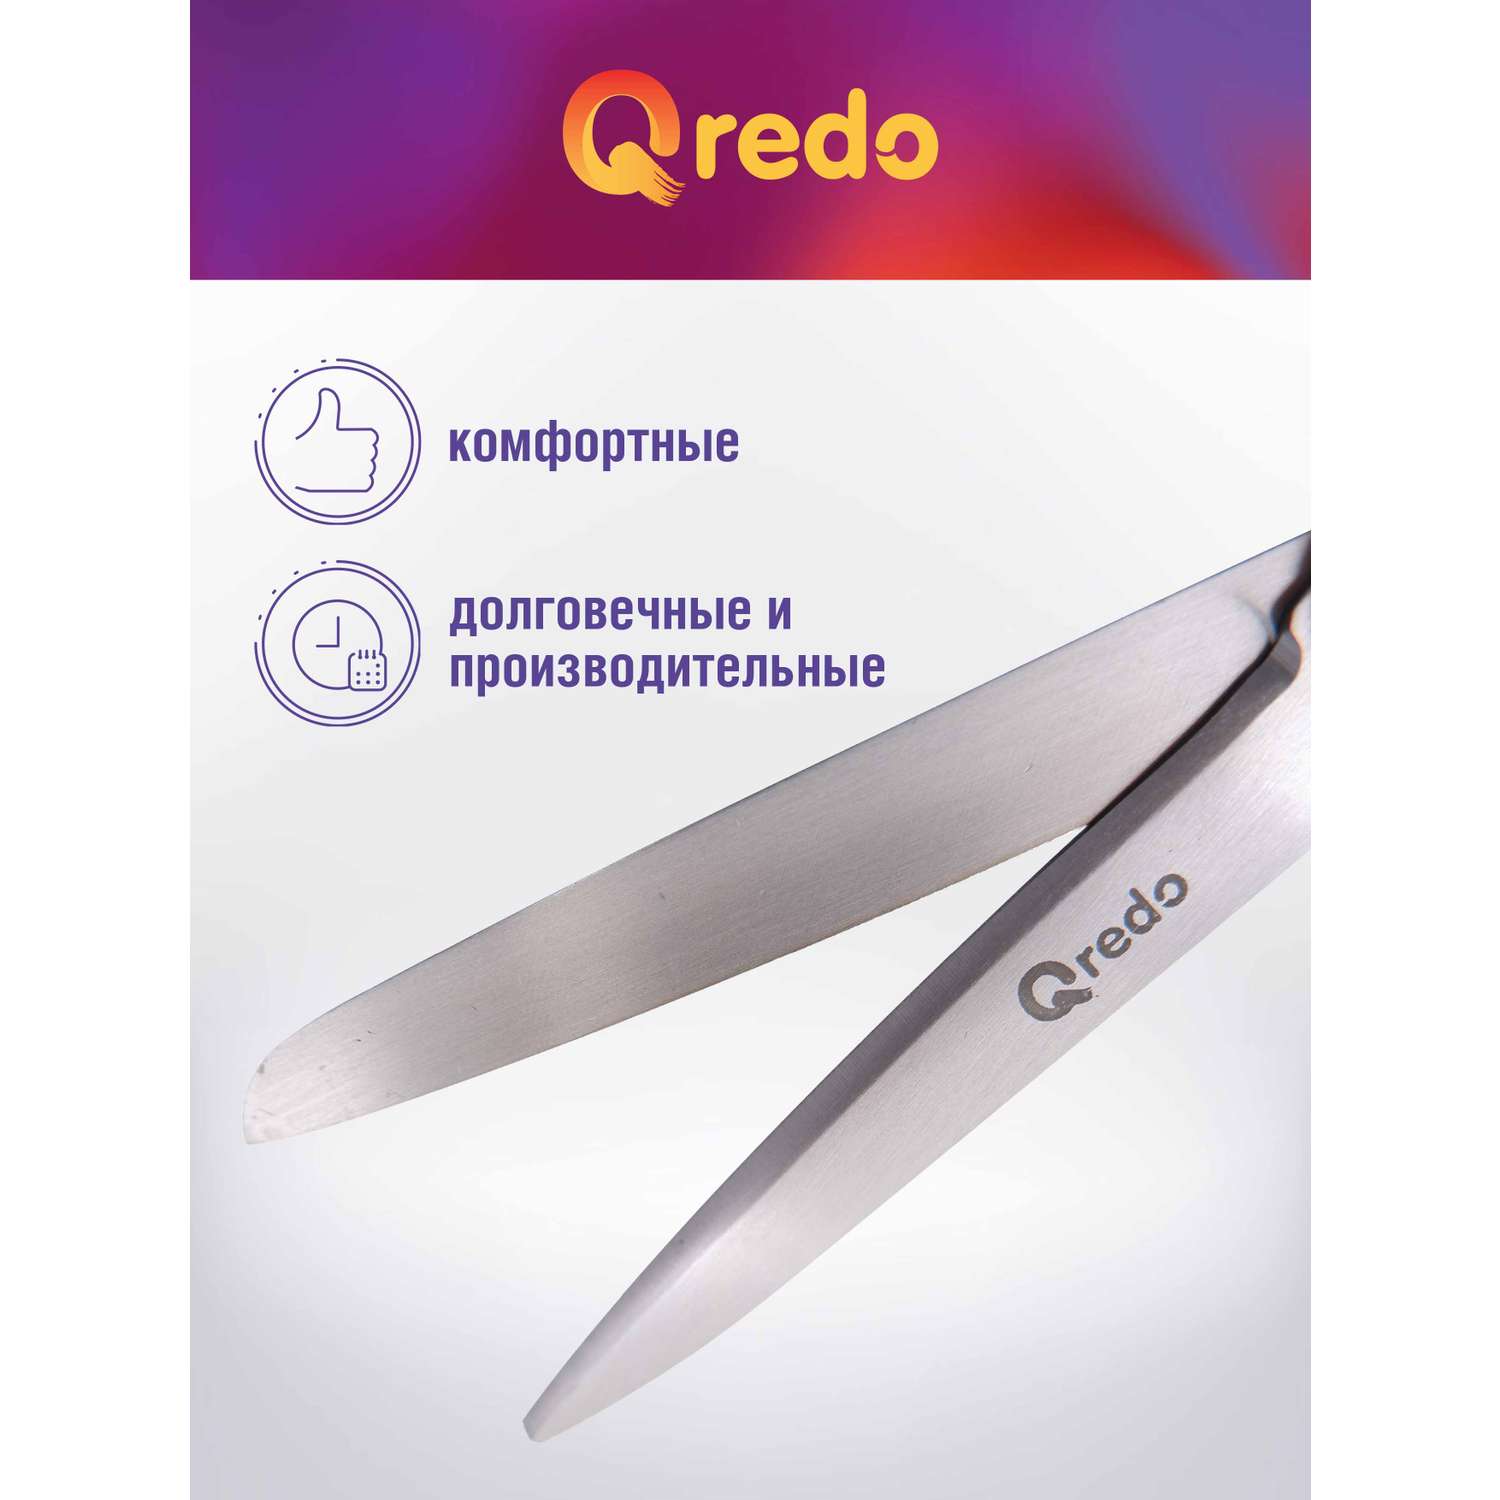 Ножницы Qredo 17 см ADAMANT 3D лезвие эргономичные ручки серый зеленый пластик прорезиненные - фото 3